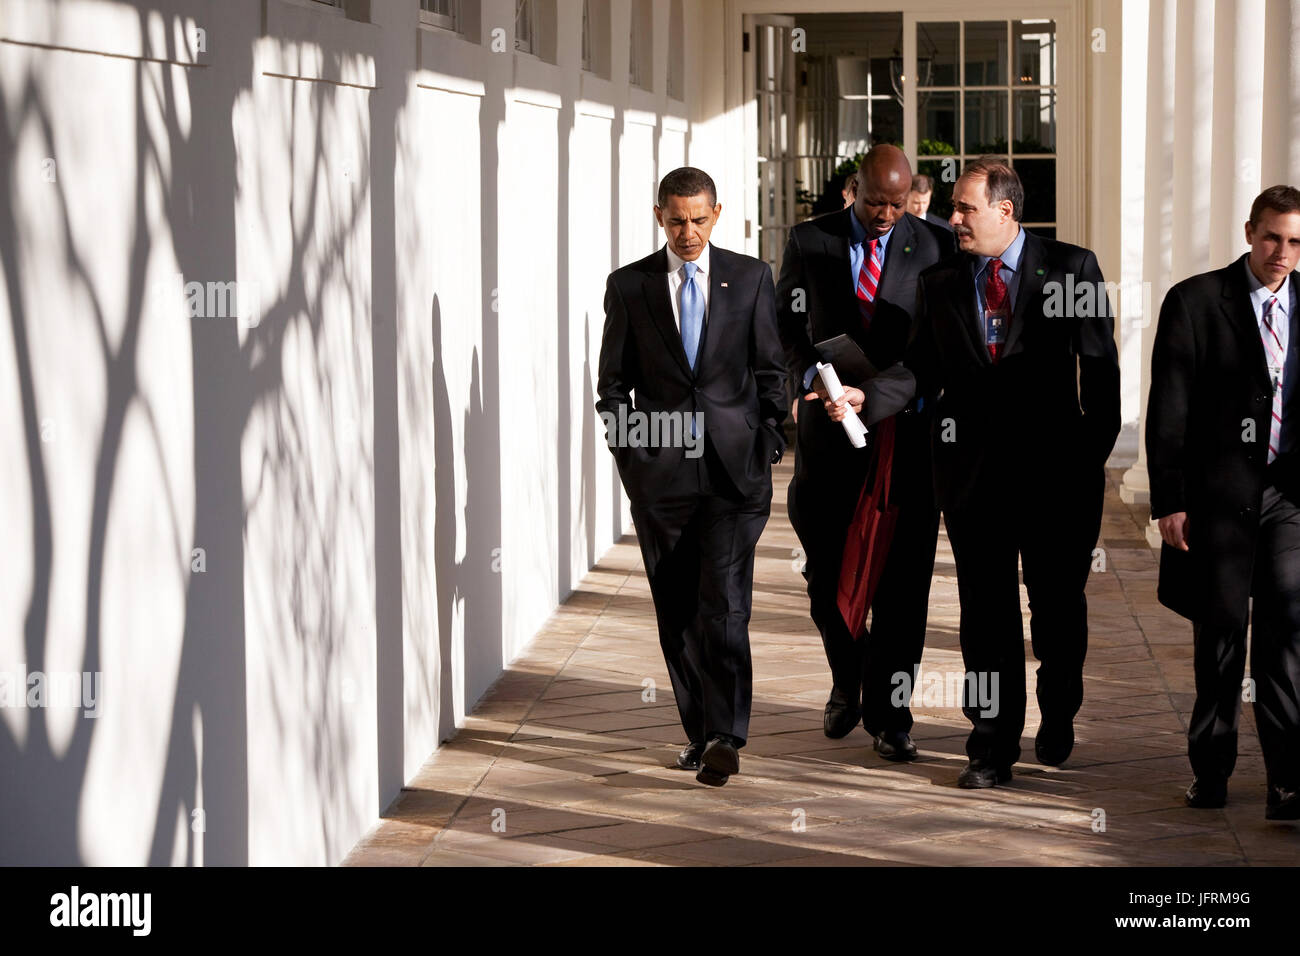 Le président Barack Obama marche sur la colonnade avec David Axelrod et Reggie Love (c) lors de sa première journée à l'office de tourisme 1/21/09. Photo Officiel de la Maison Blanche par Pete Souza Banque D'Images